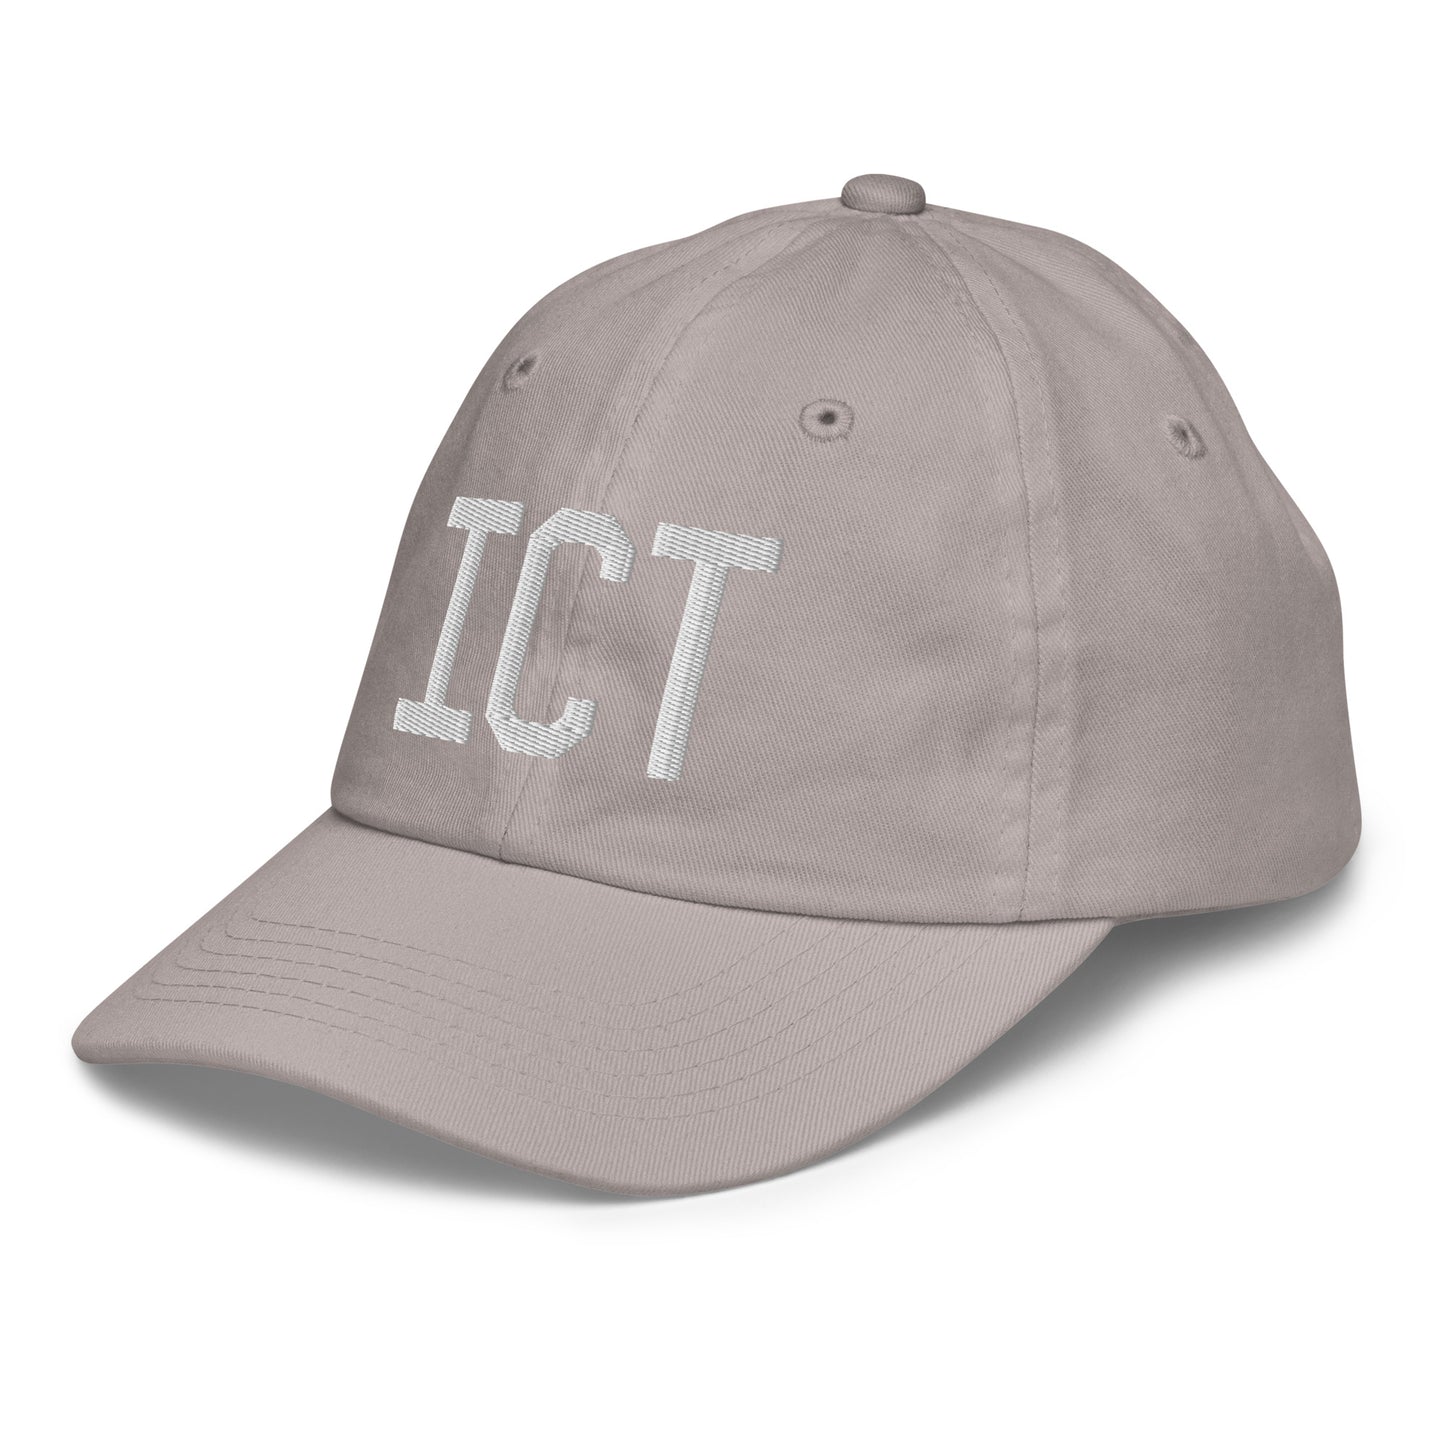 Airport Code Kid's Baseball Cap - White • ICT Wichita • YHM Designs - Image 27